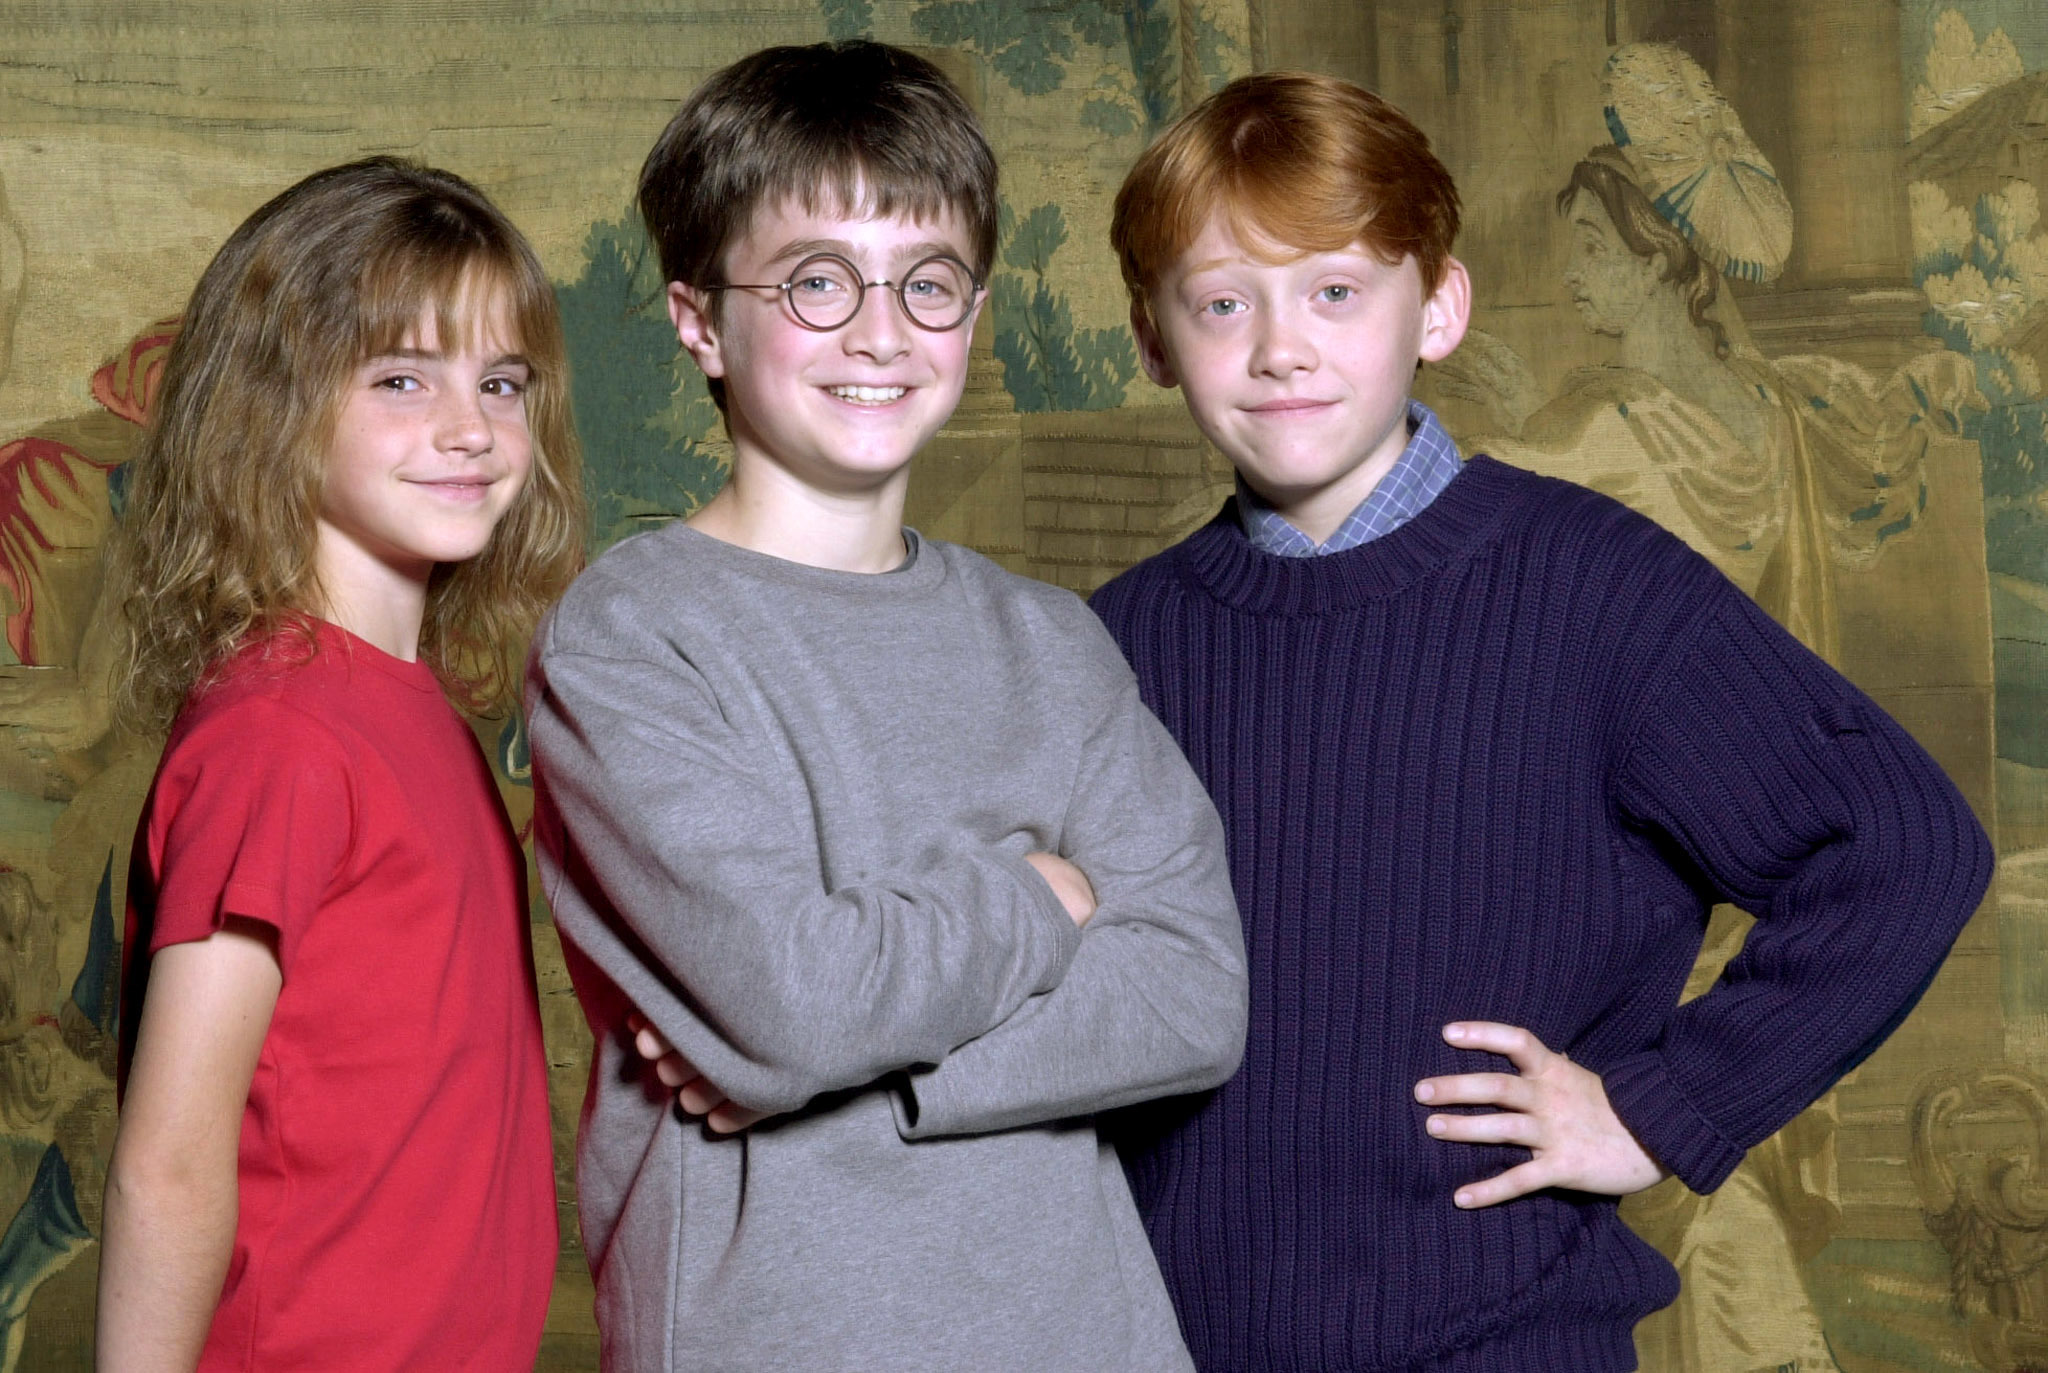 20 years later. Actorii din Harry Potter s-au reunit pentru un proiect special Ce surprize îi așteaptă pe fani?